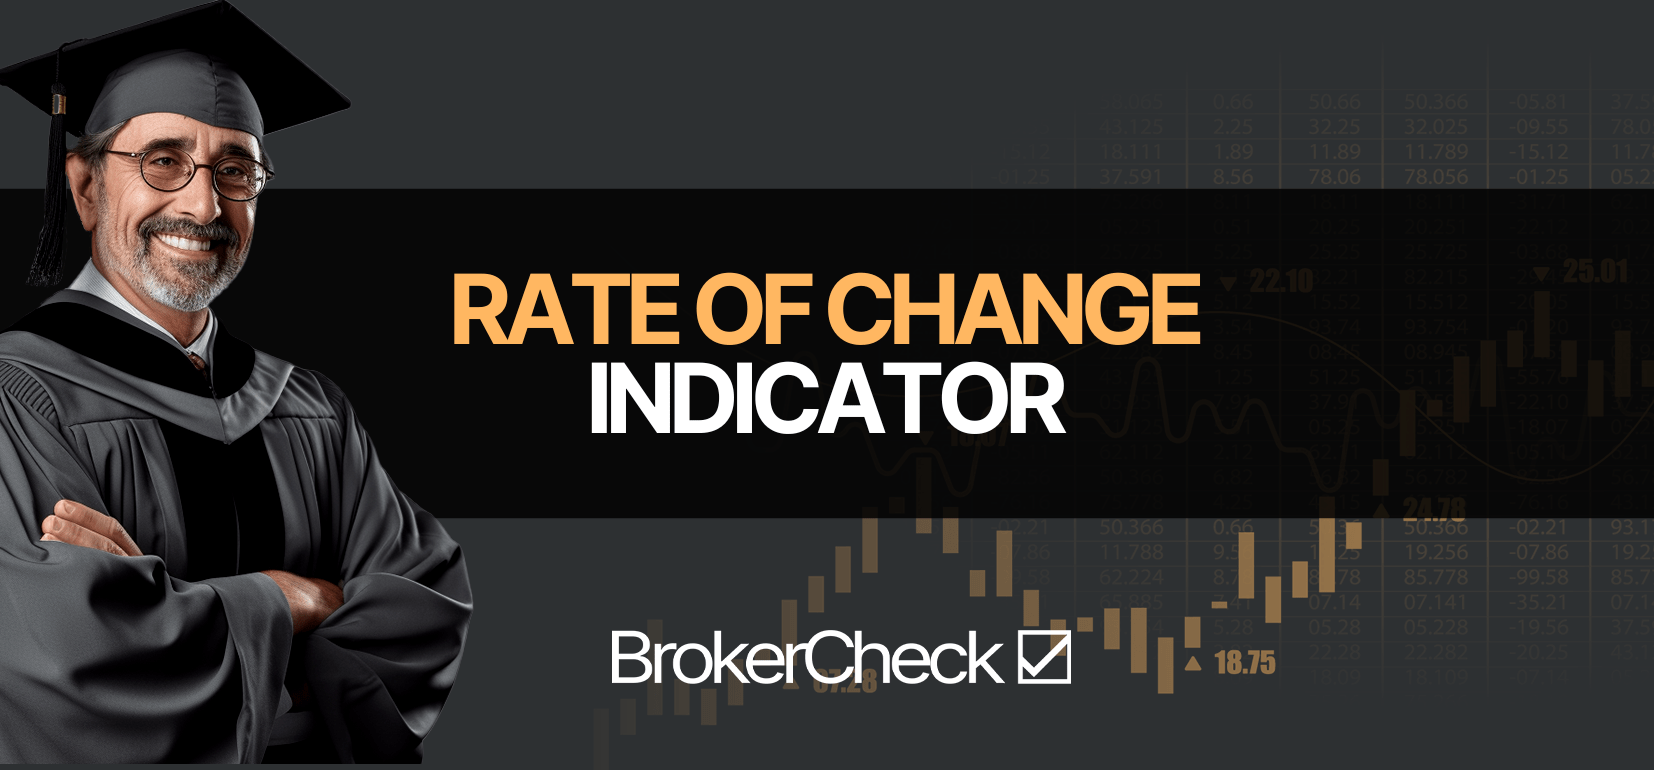 Indicatore del tasso di cambiamento